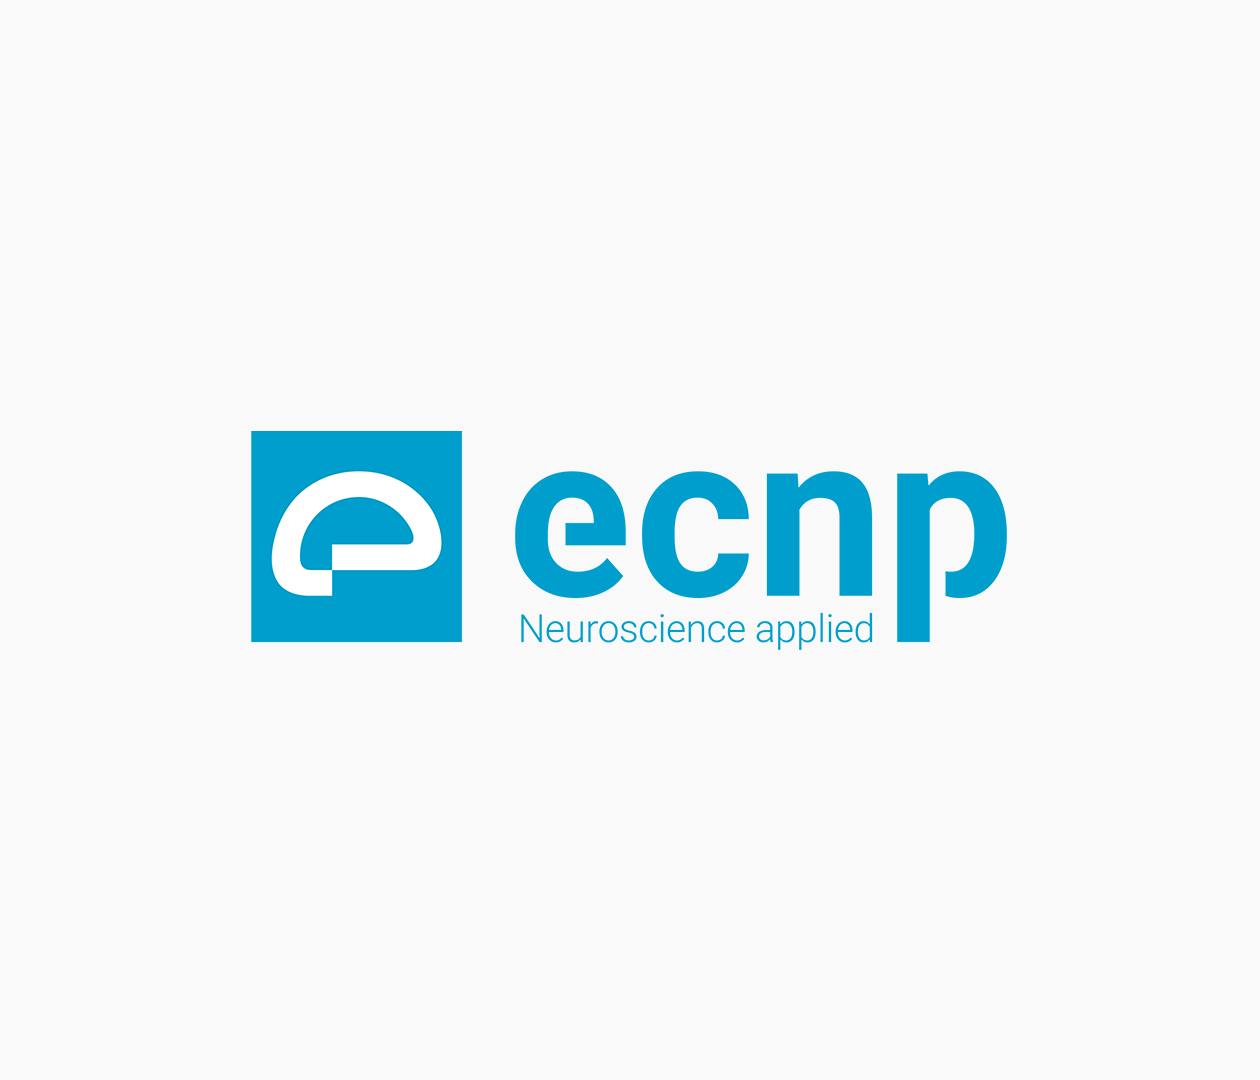 Logo dell'ECNP: quadrato azzurro contenente un cervello bianco stilizzato e scritta a lato "ecnp Neuroscience applied".